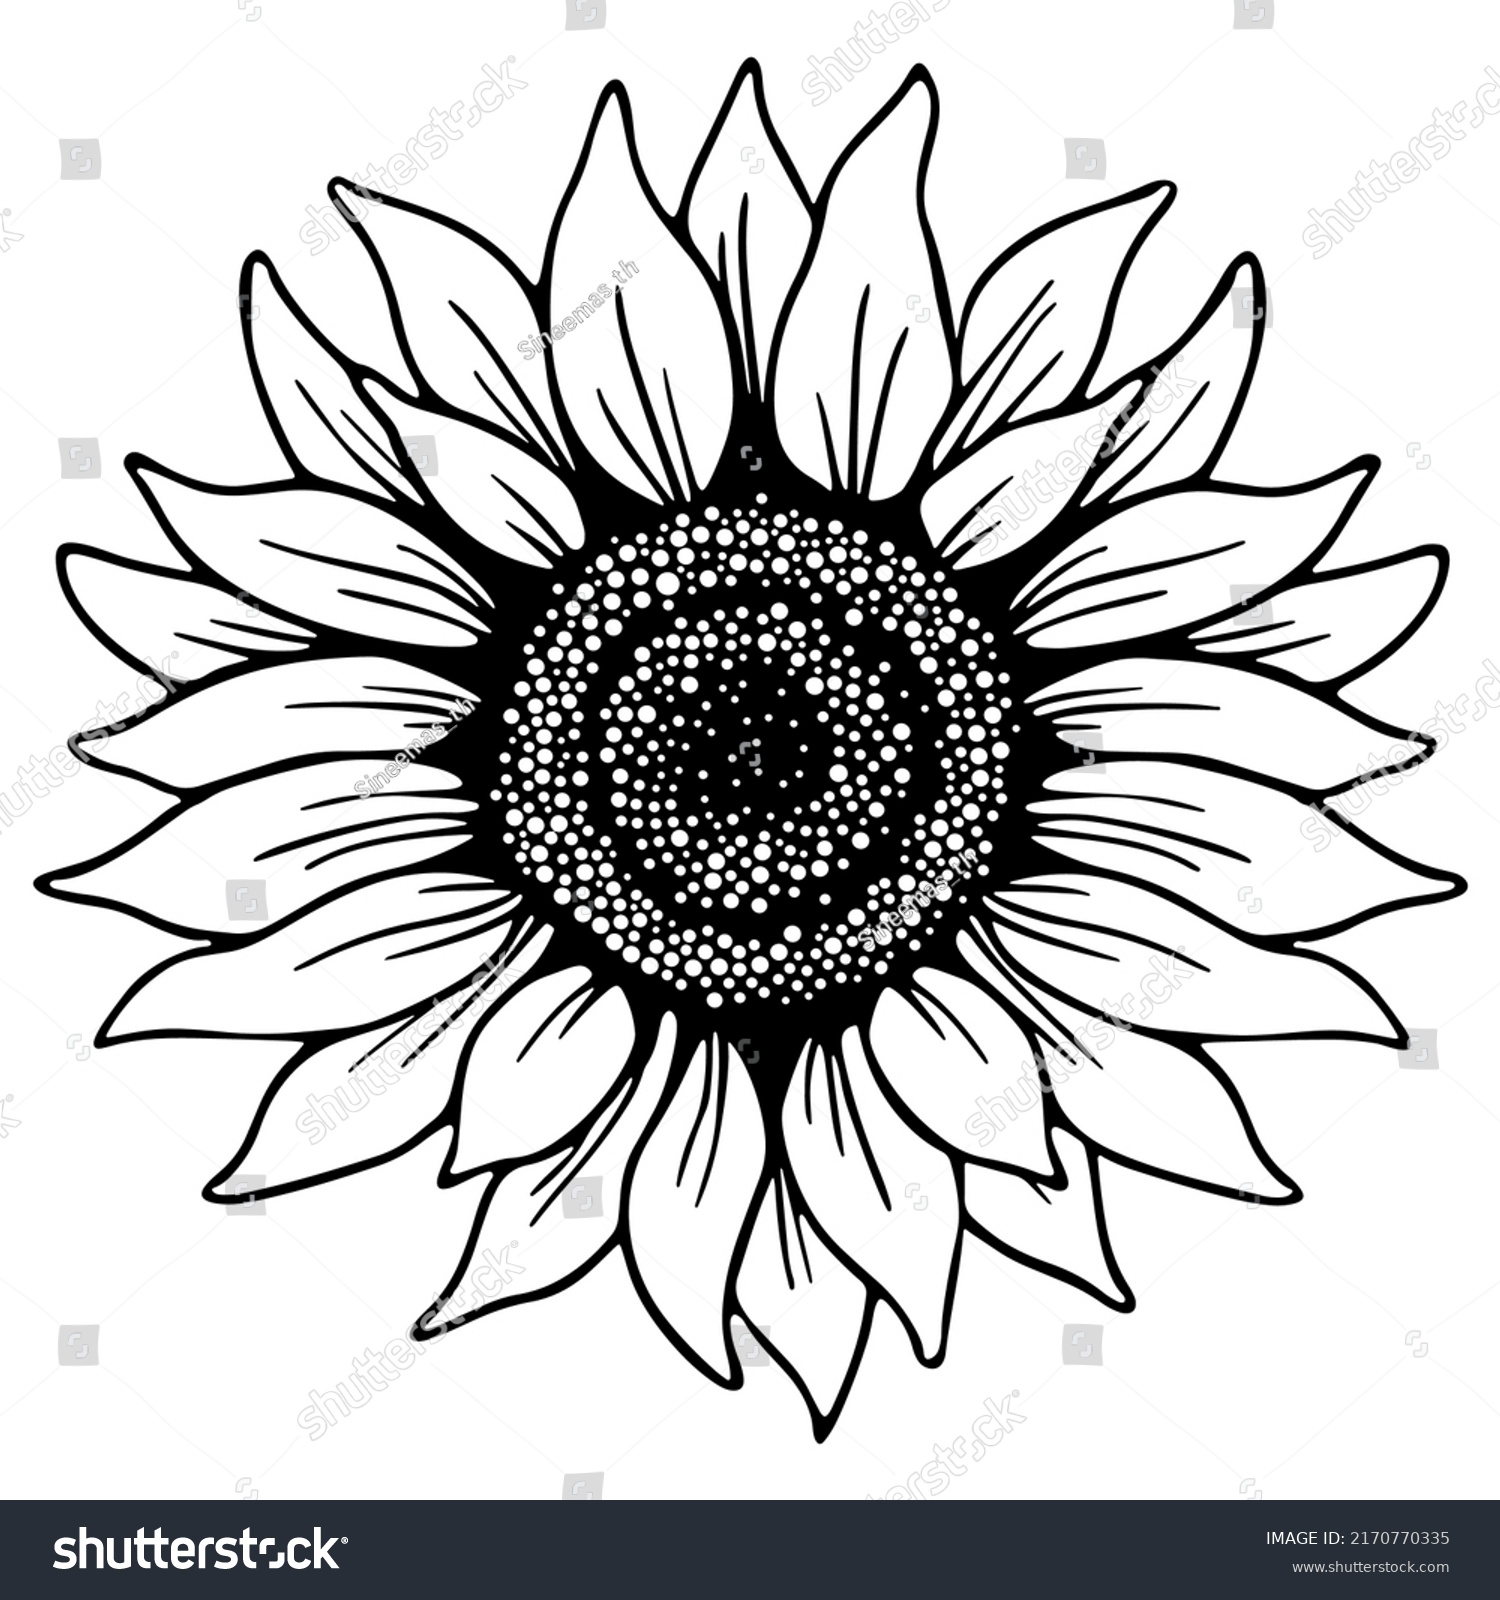 Sunflower Flowerblack Outline Sunflower Line Art Stock Vector (Royalty ...